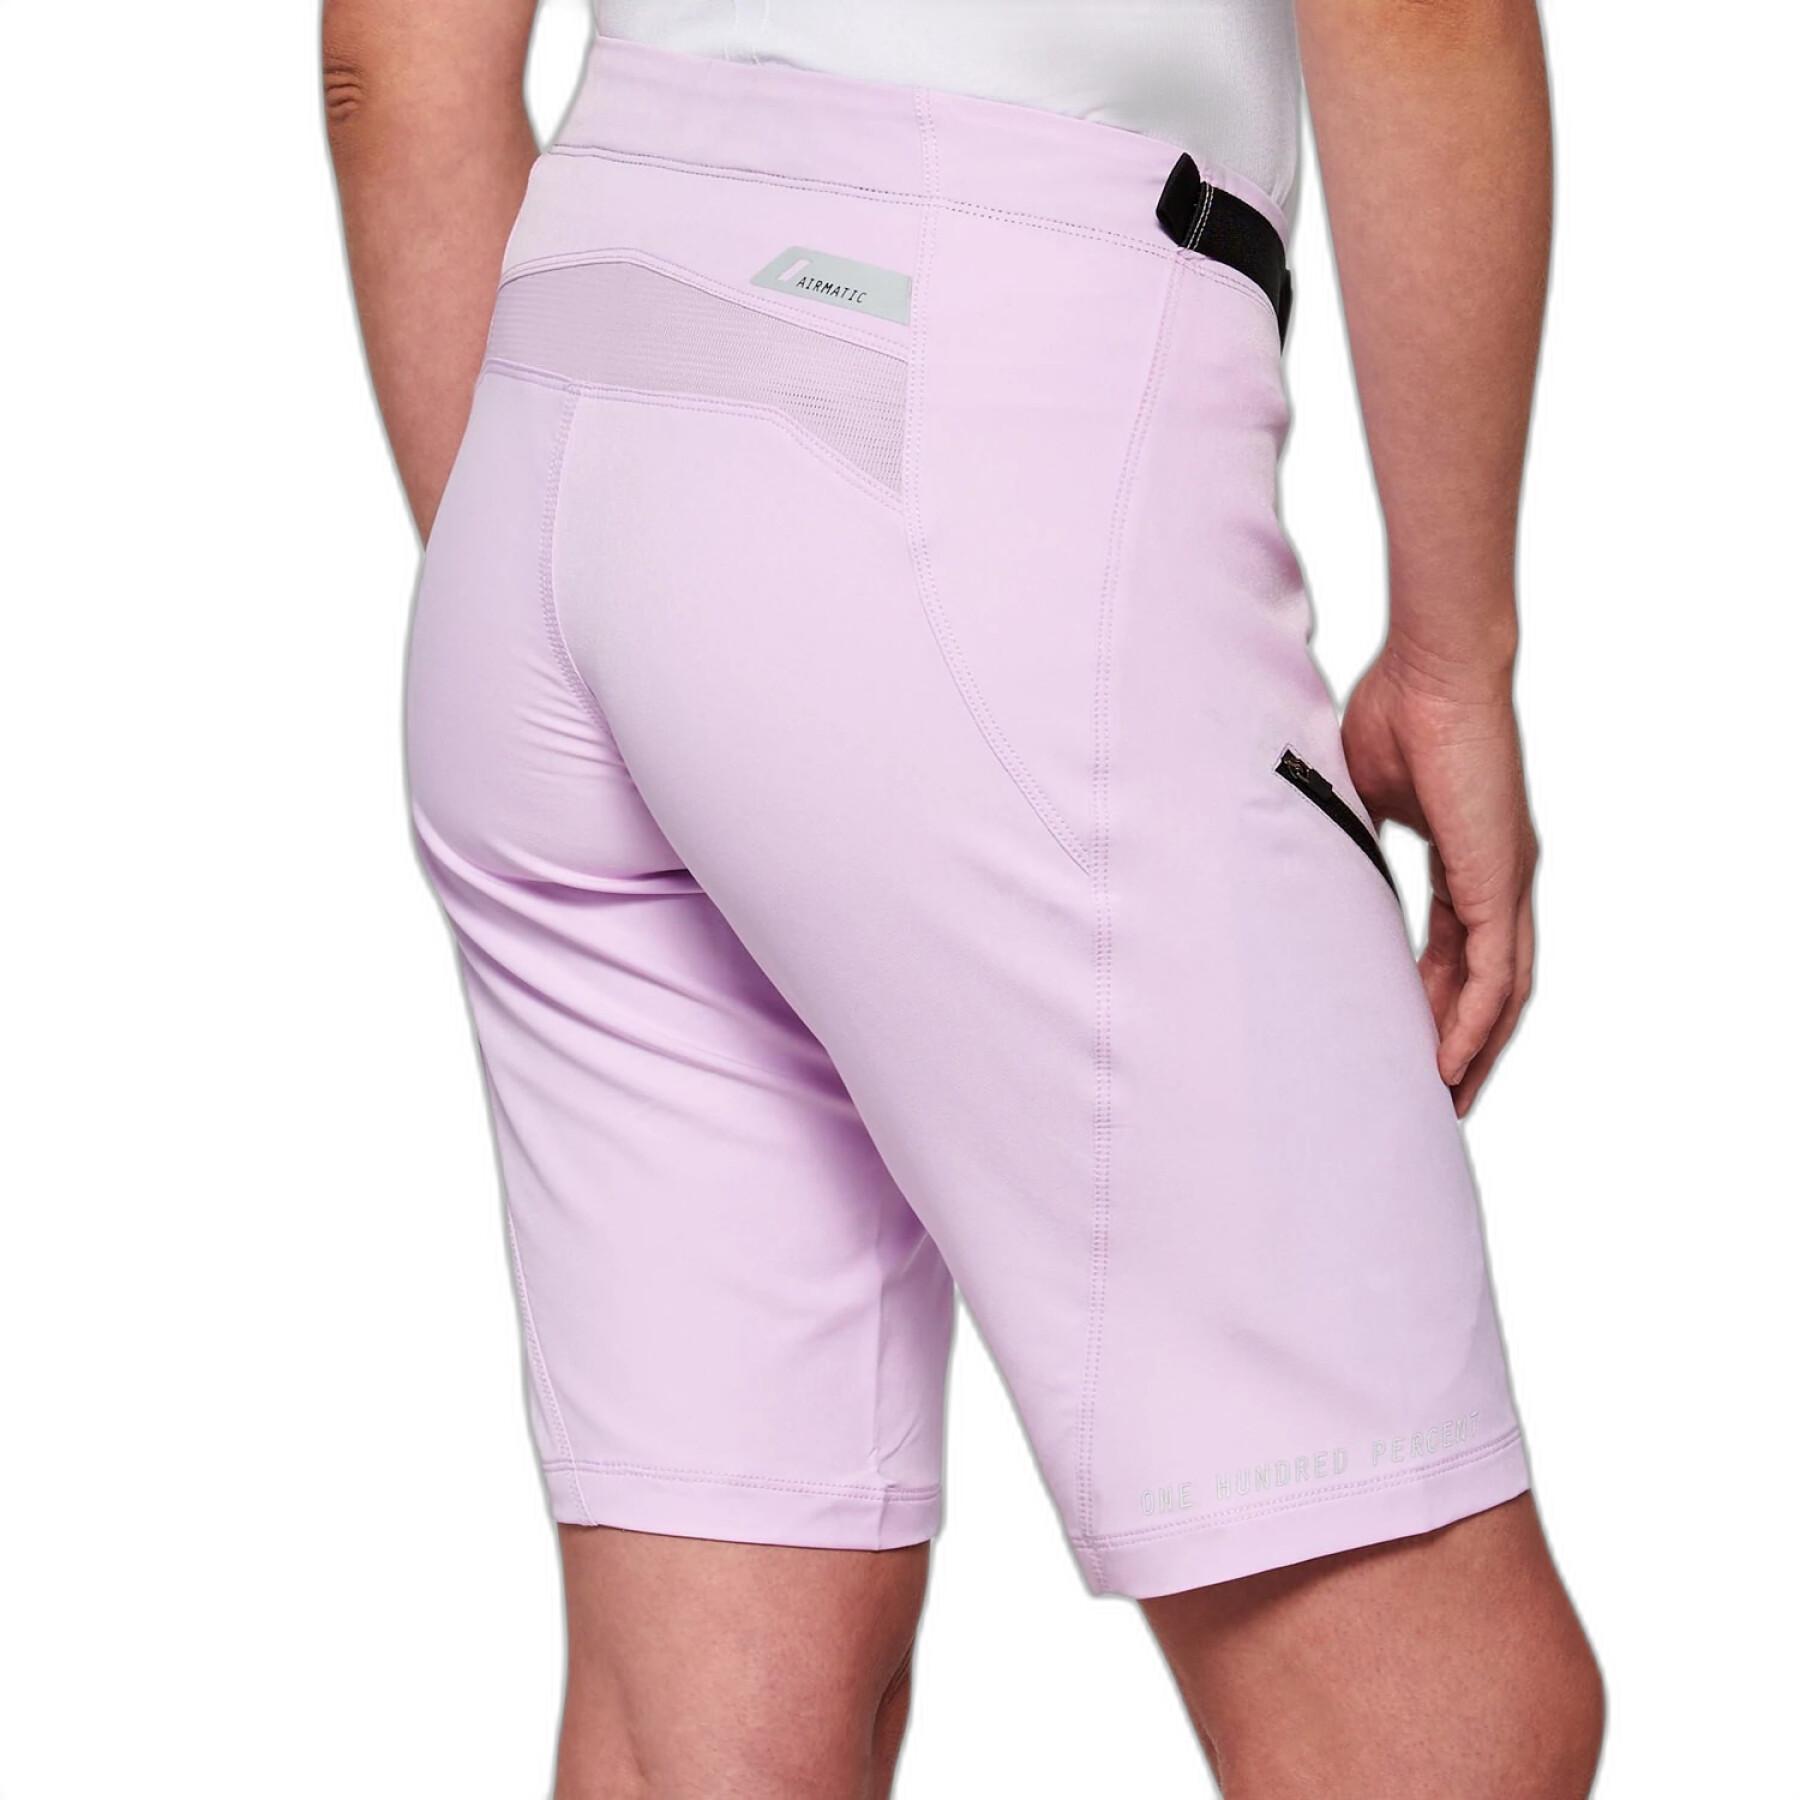 Shorts für Frauen 100% airmatic